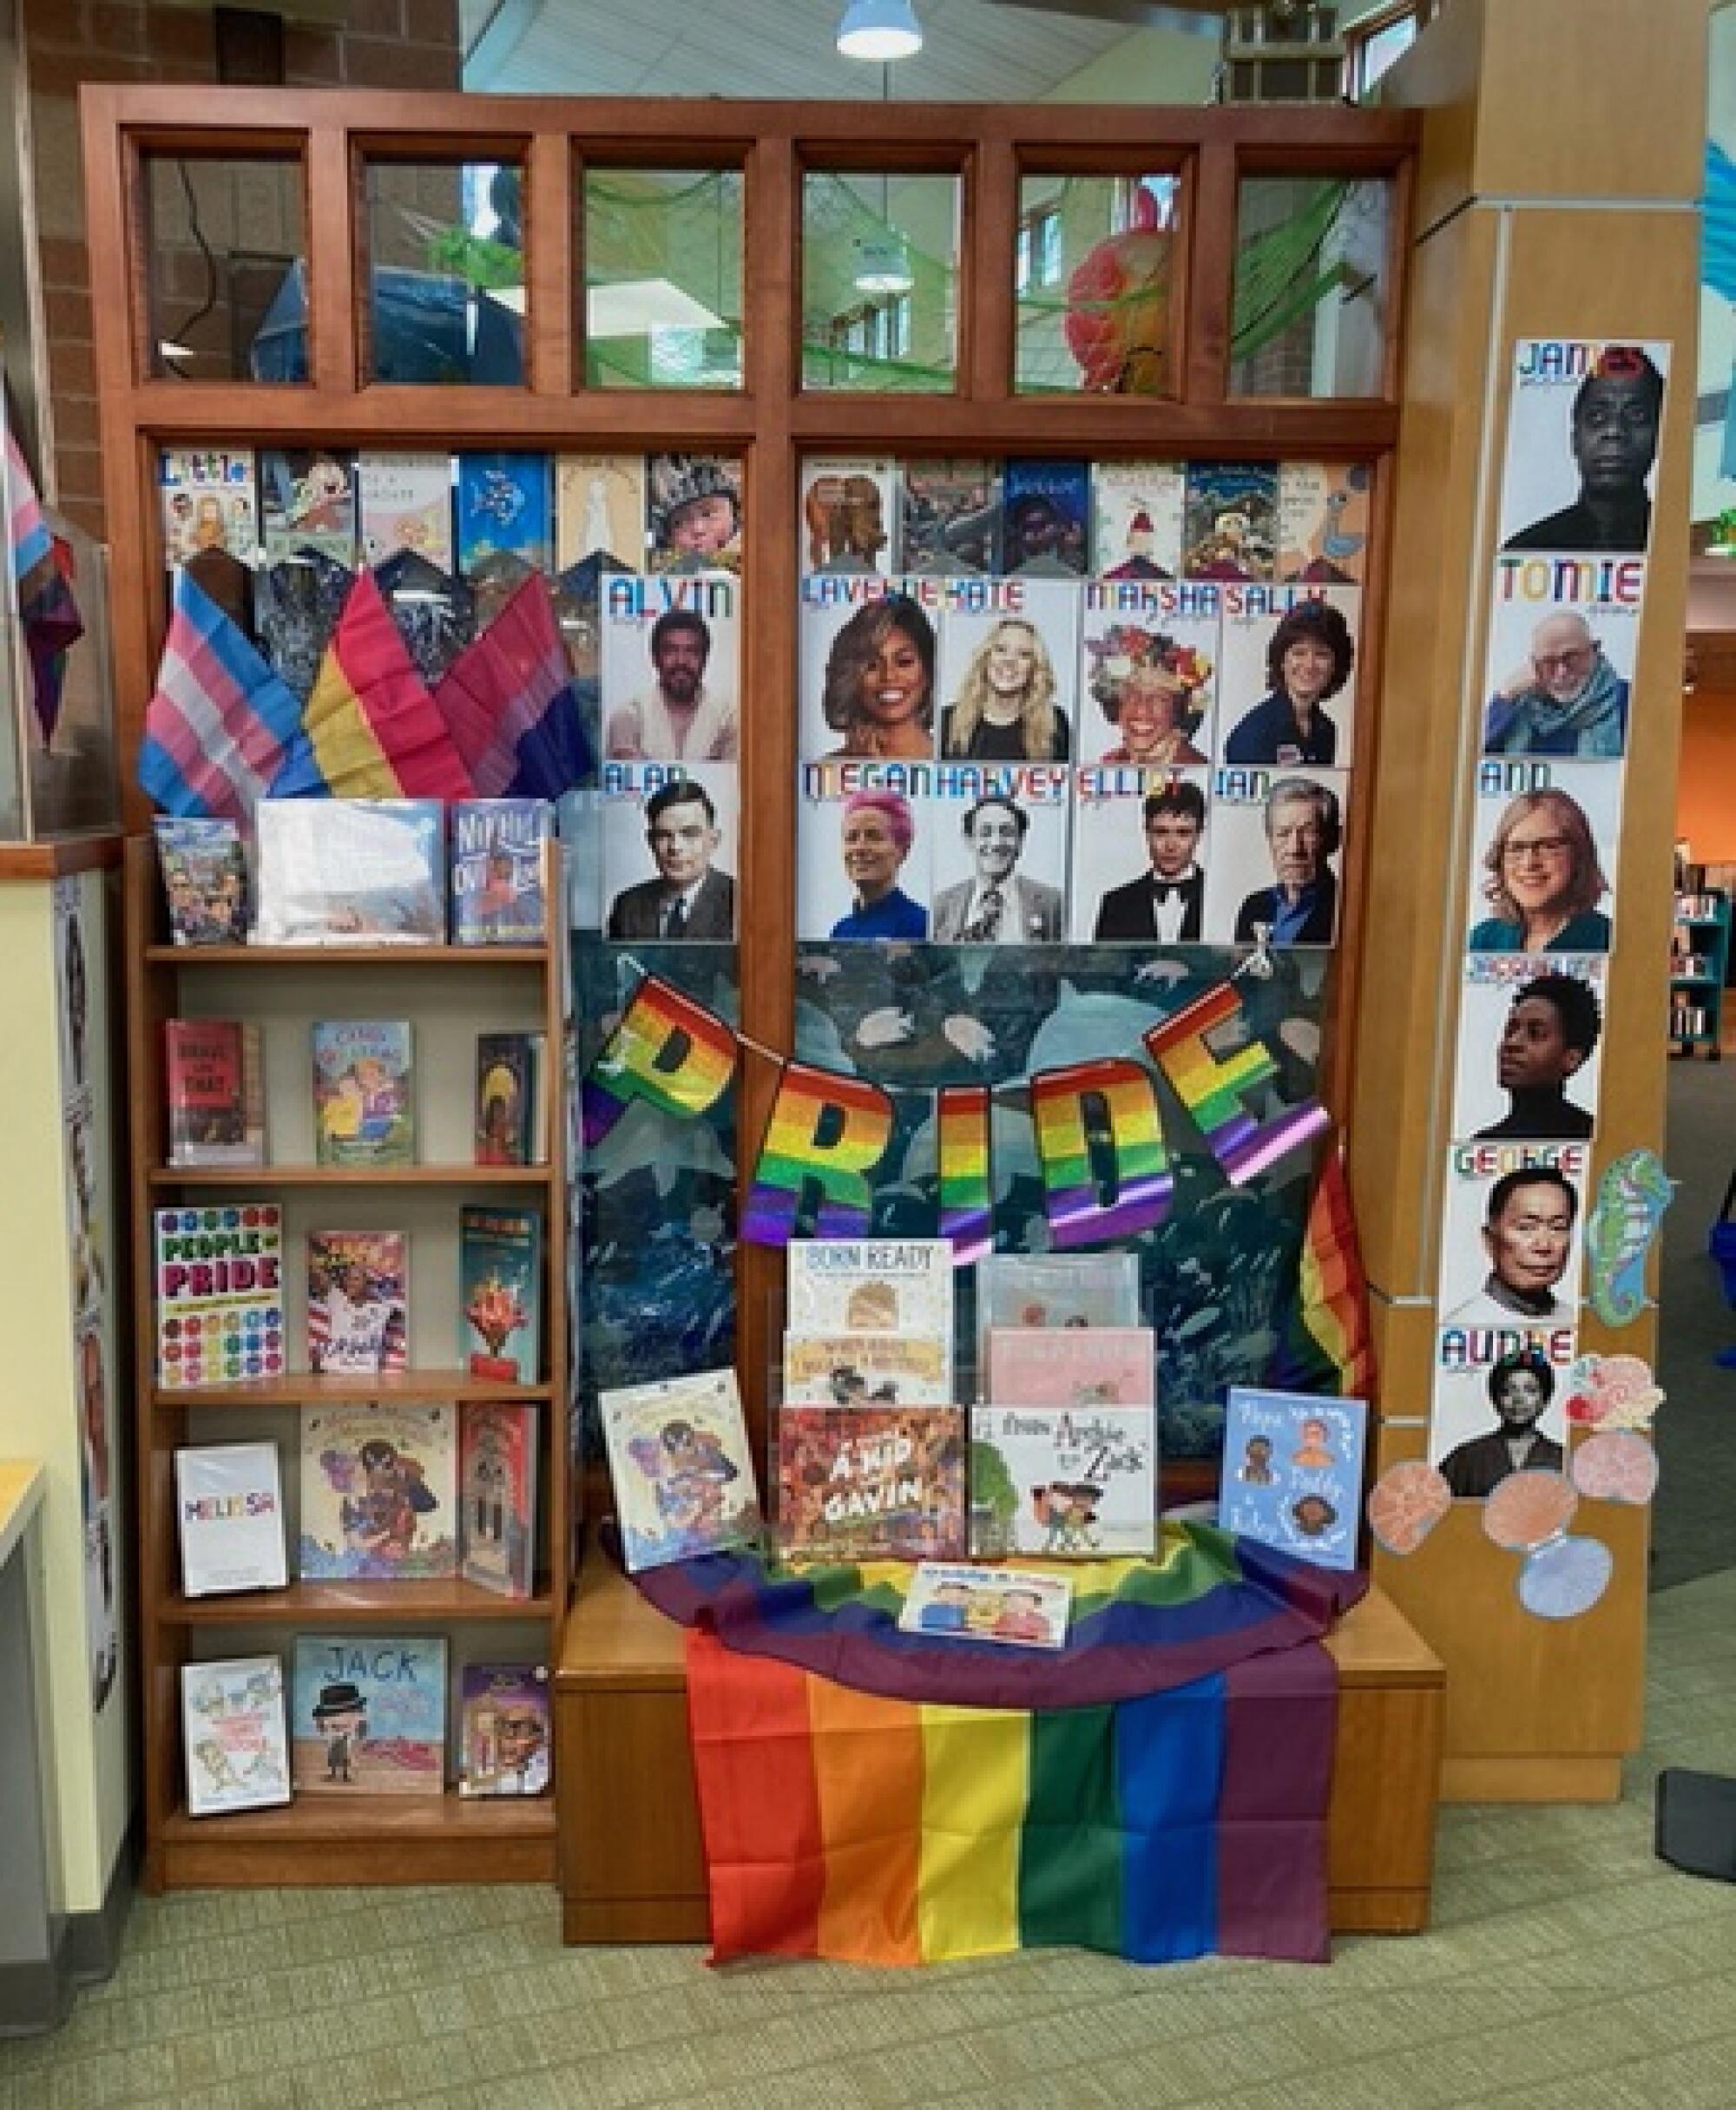 图书馆中展示 LGBTQ 骄傲旗帜和照片